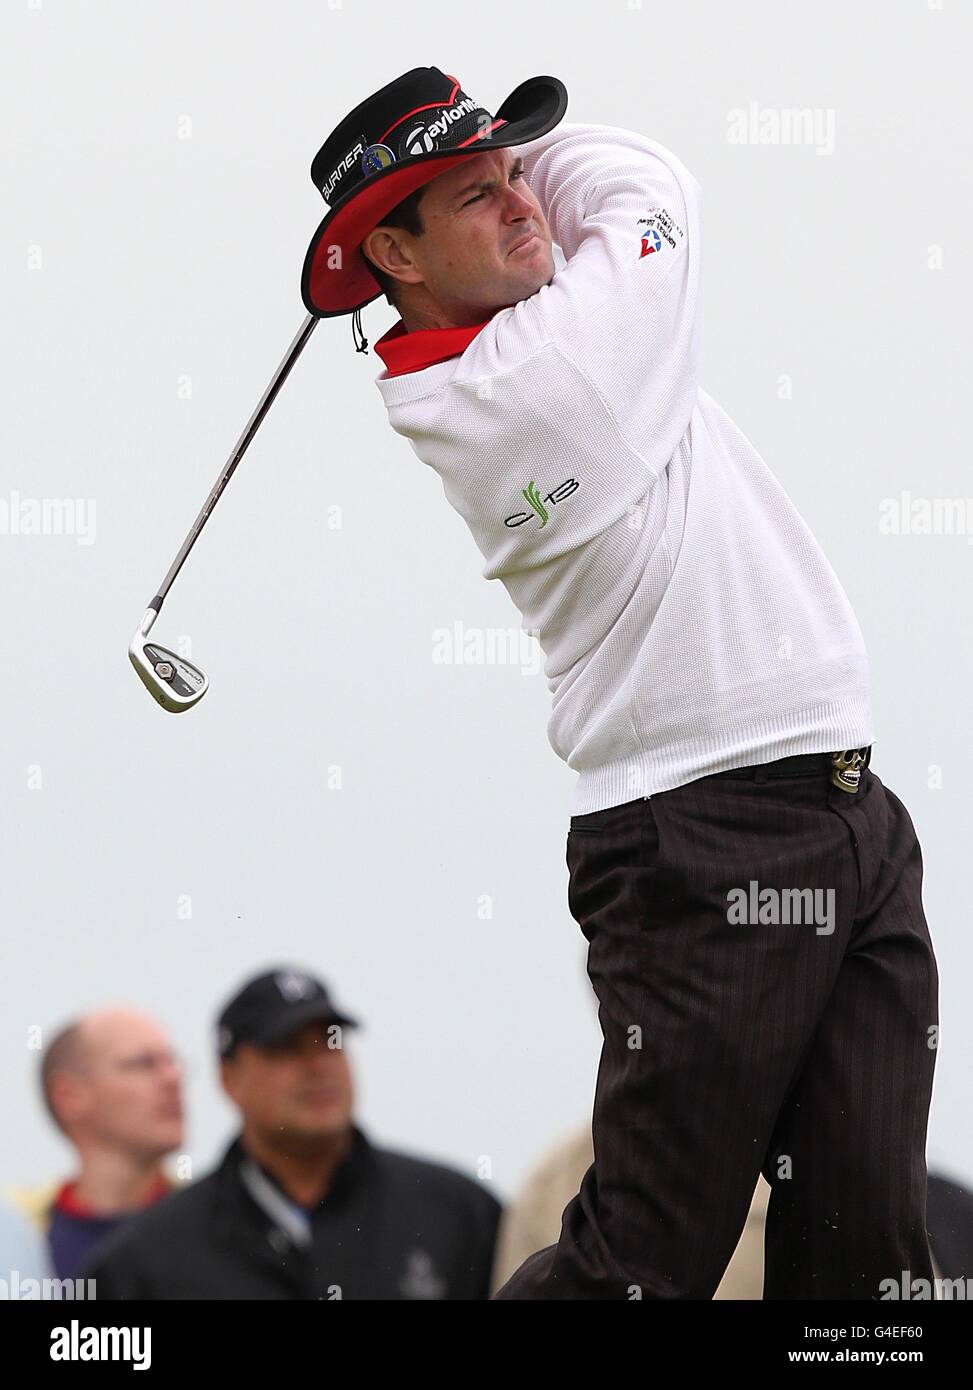 Golf - El Campeonato Abierto 2011 - Día Uno - Royal St George's. Rory Sabbatini de Sudáfrica en acción Foto de stock